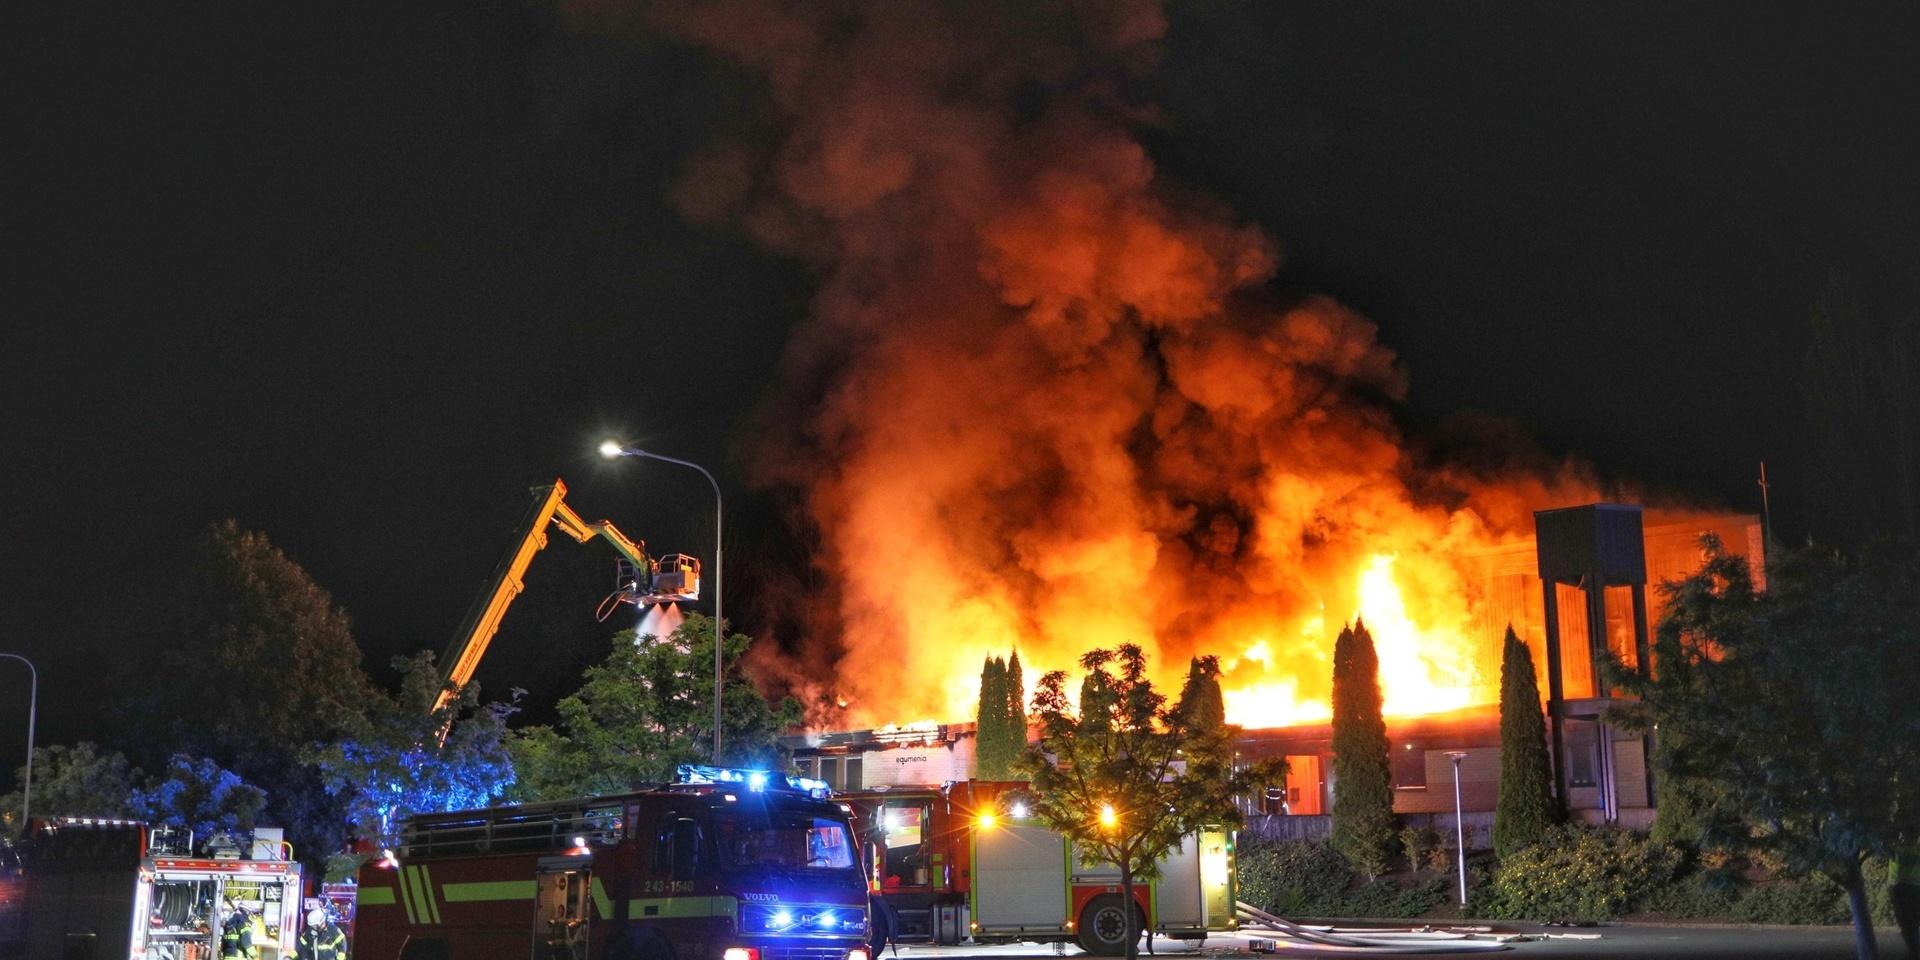 En kraftig brand förstörde Ansgariikyrkan i Jönköping under natten. Brandorsaken är oklar. Polisen har inlett en utredning om mordbrand.